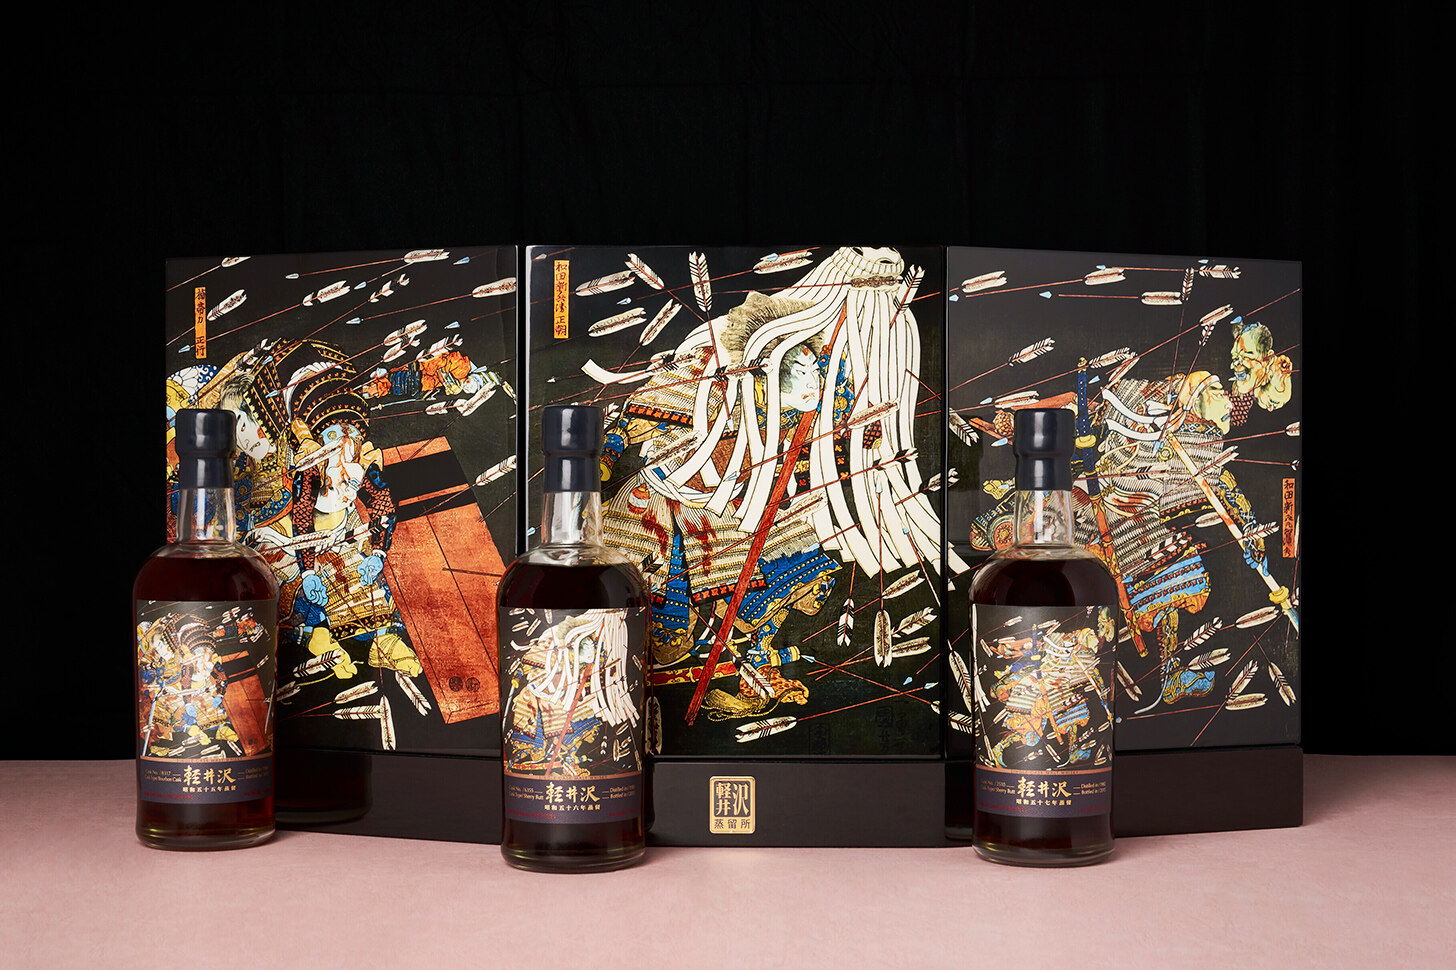 名酒 拍賣 投資 日本威士忌 Karuizawa輕井澤